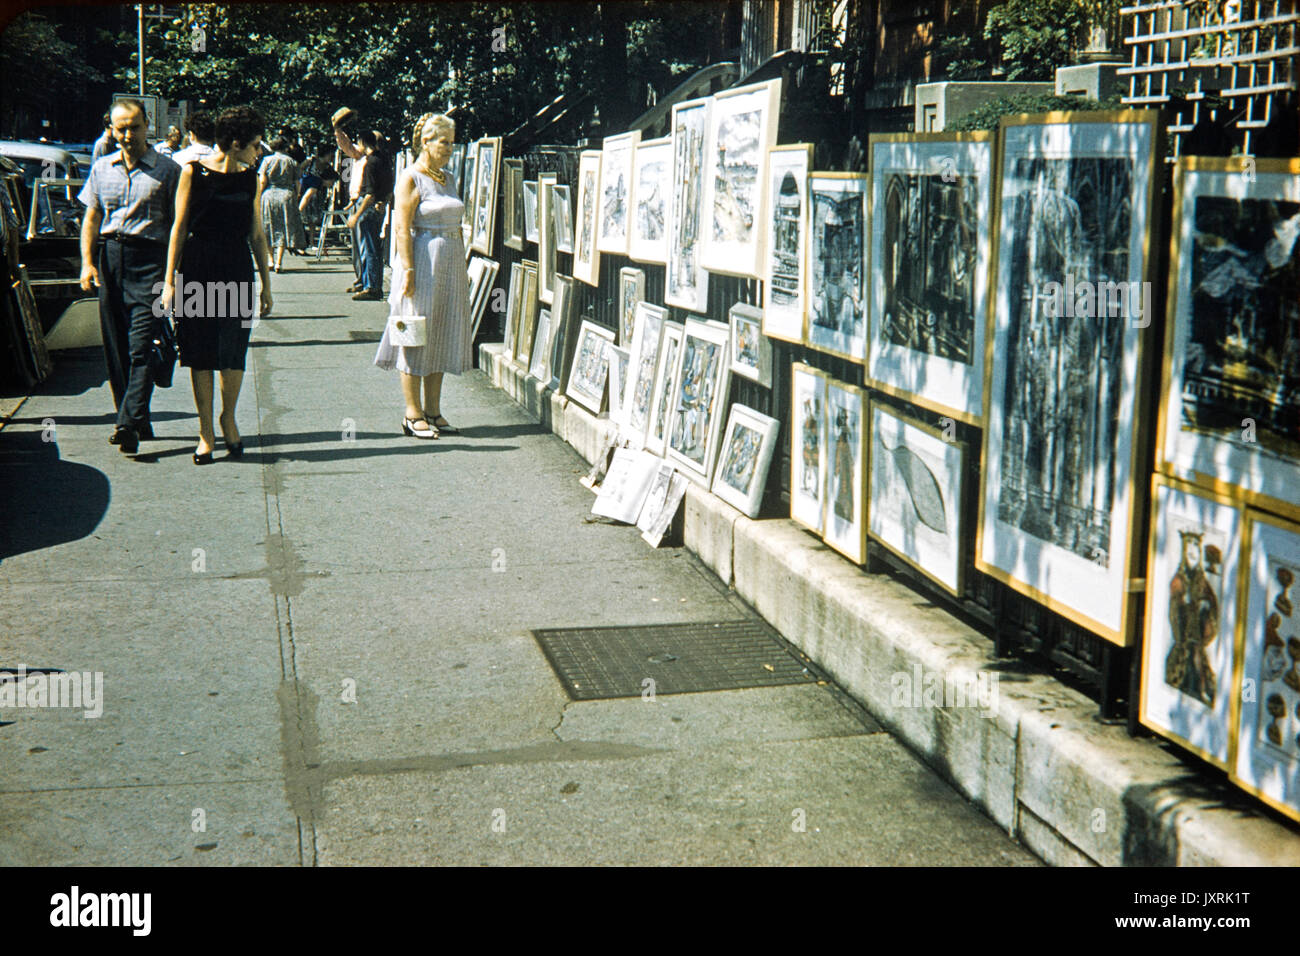 Femme et couple art street art à Greenwich Village, New York, en septembre 1958. Image montre la mode des années 50, période. Banque D'Images